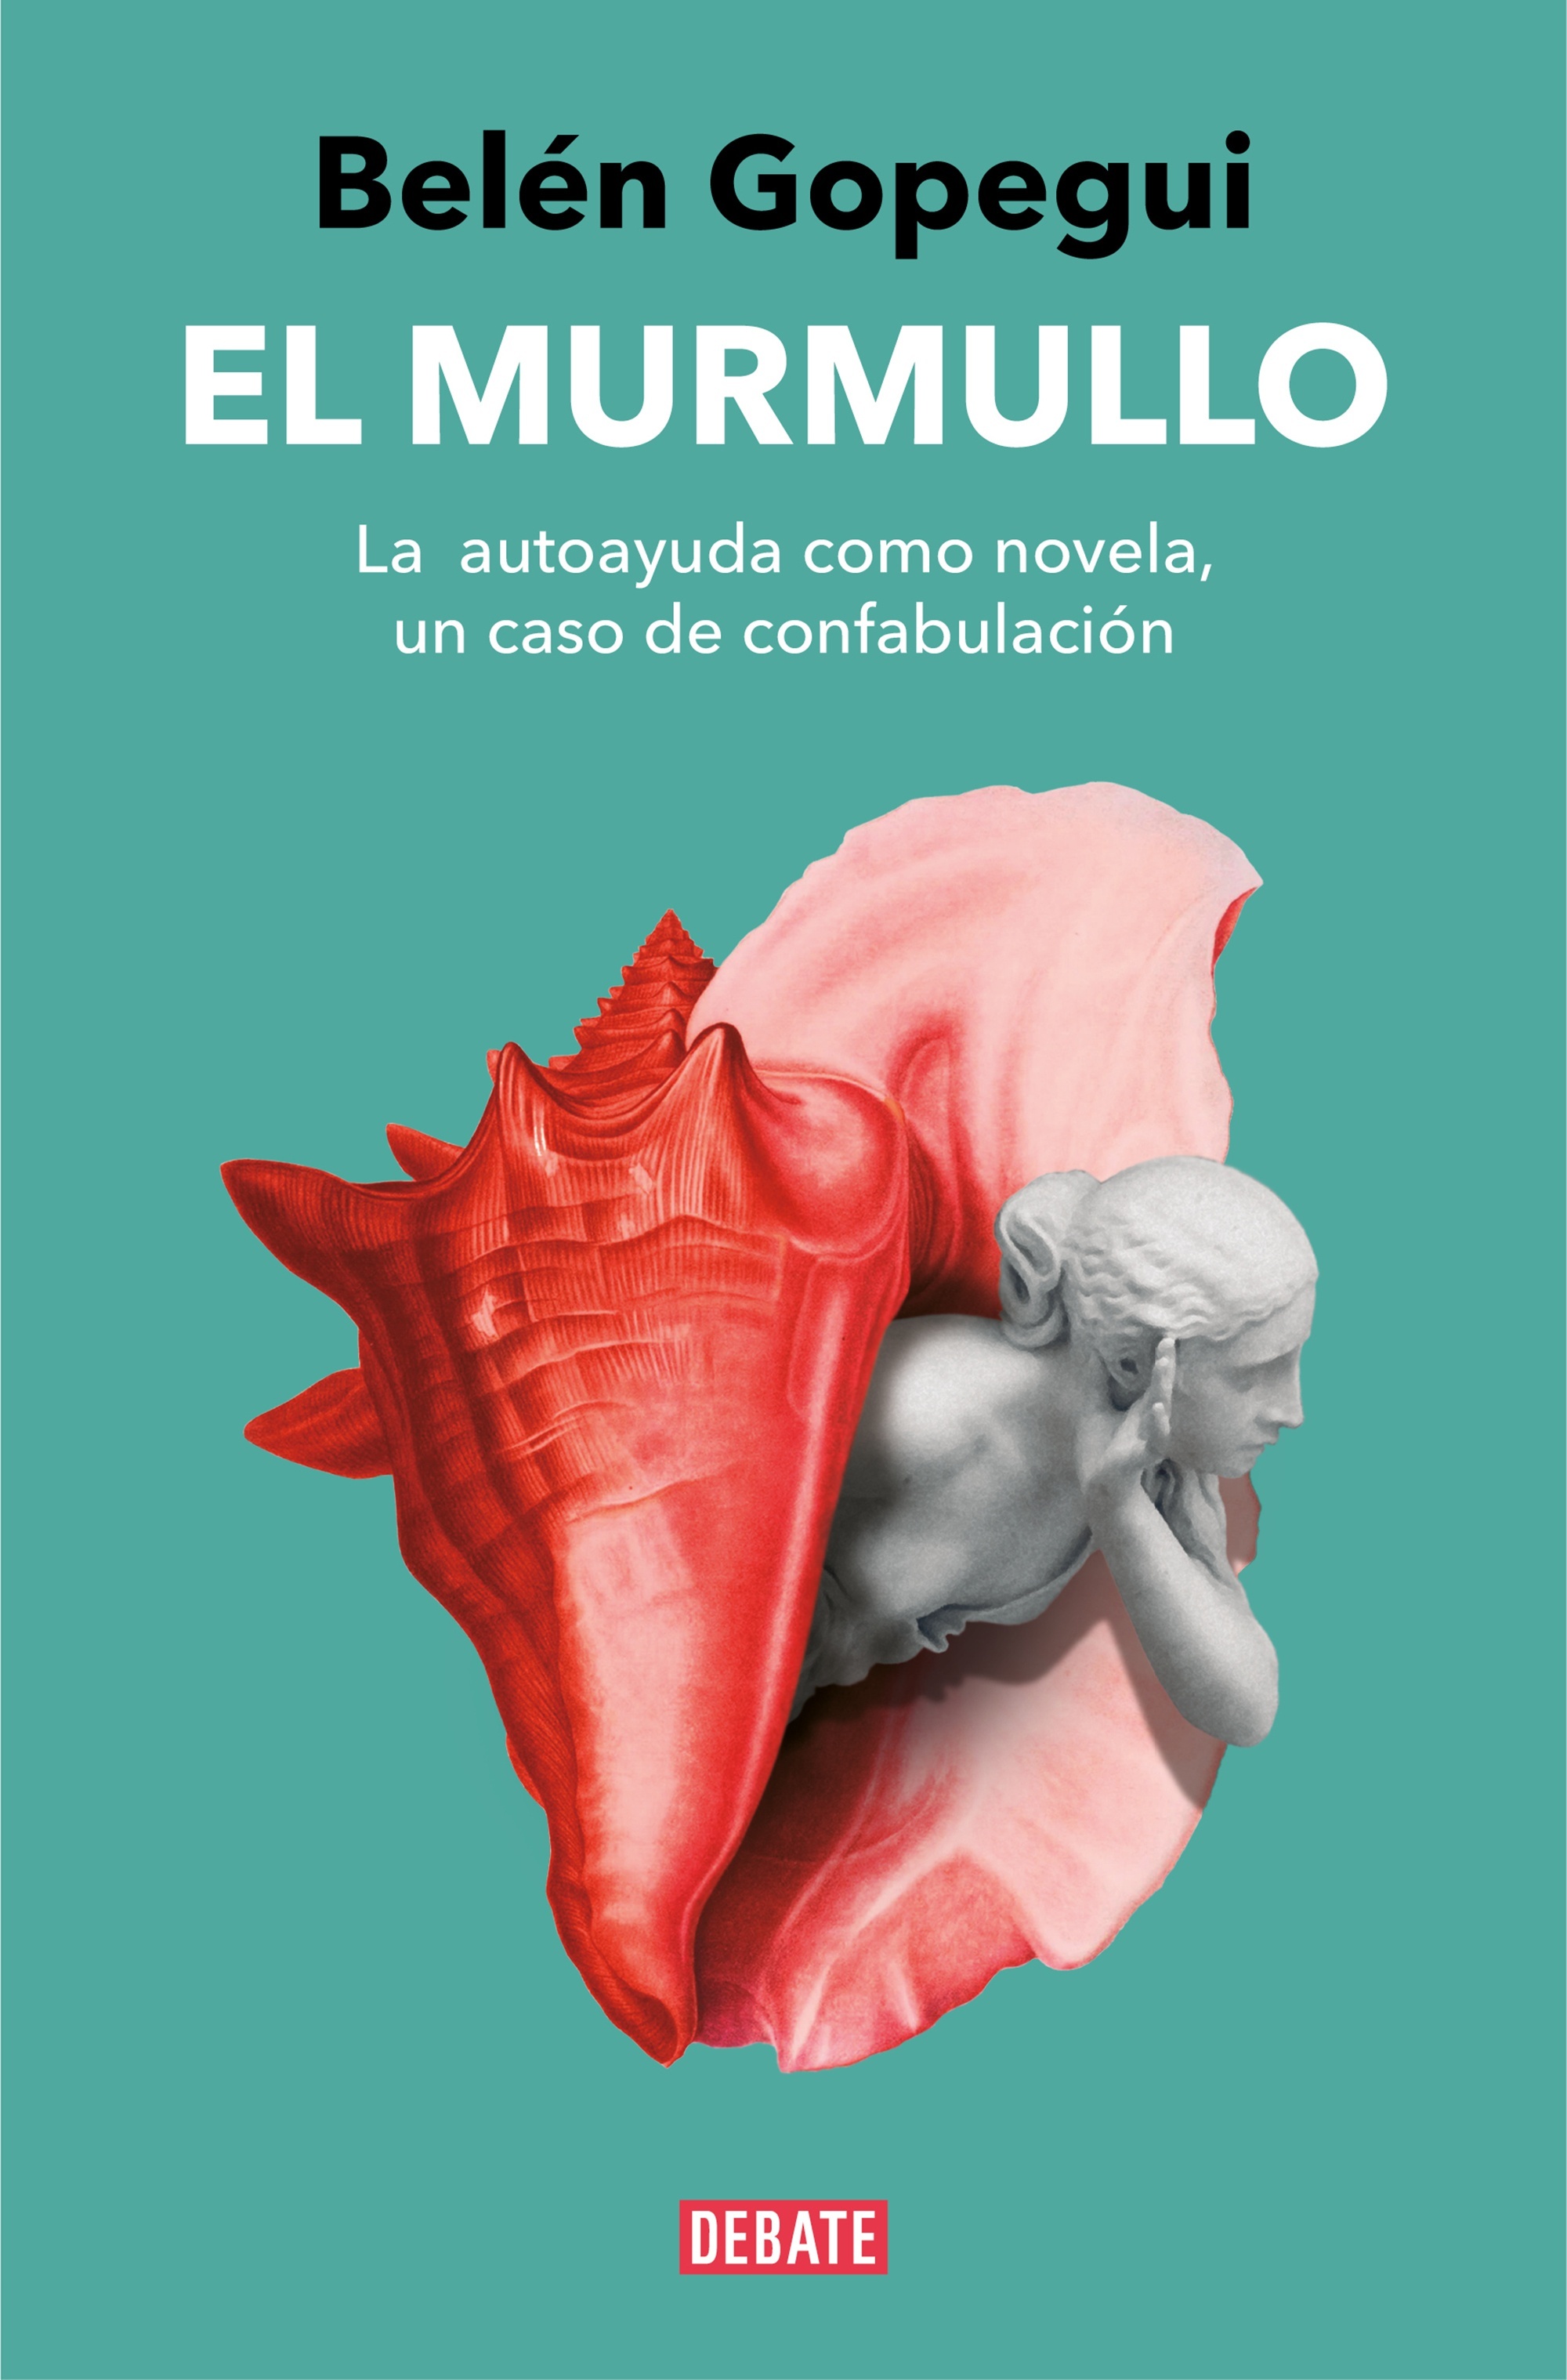 Murmullo, El "La autoayuda como novela, un caso de confabulación"